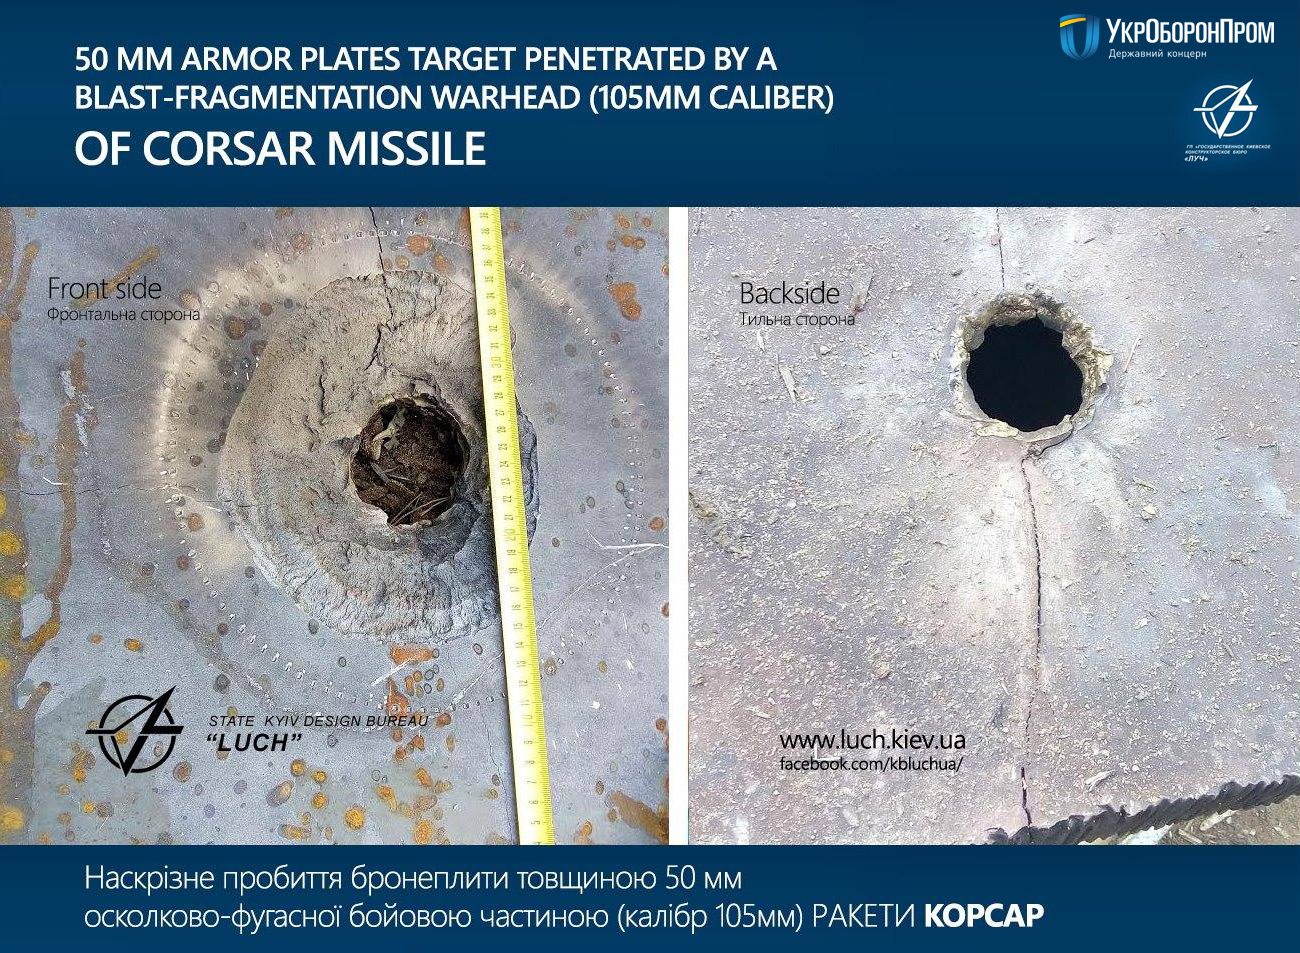 Поставки противотанковых ракетных комплексов «Стугна-П» и «Корсар» вооруженным силам Украины